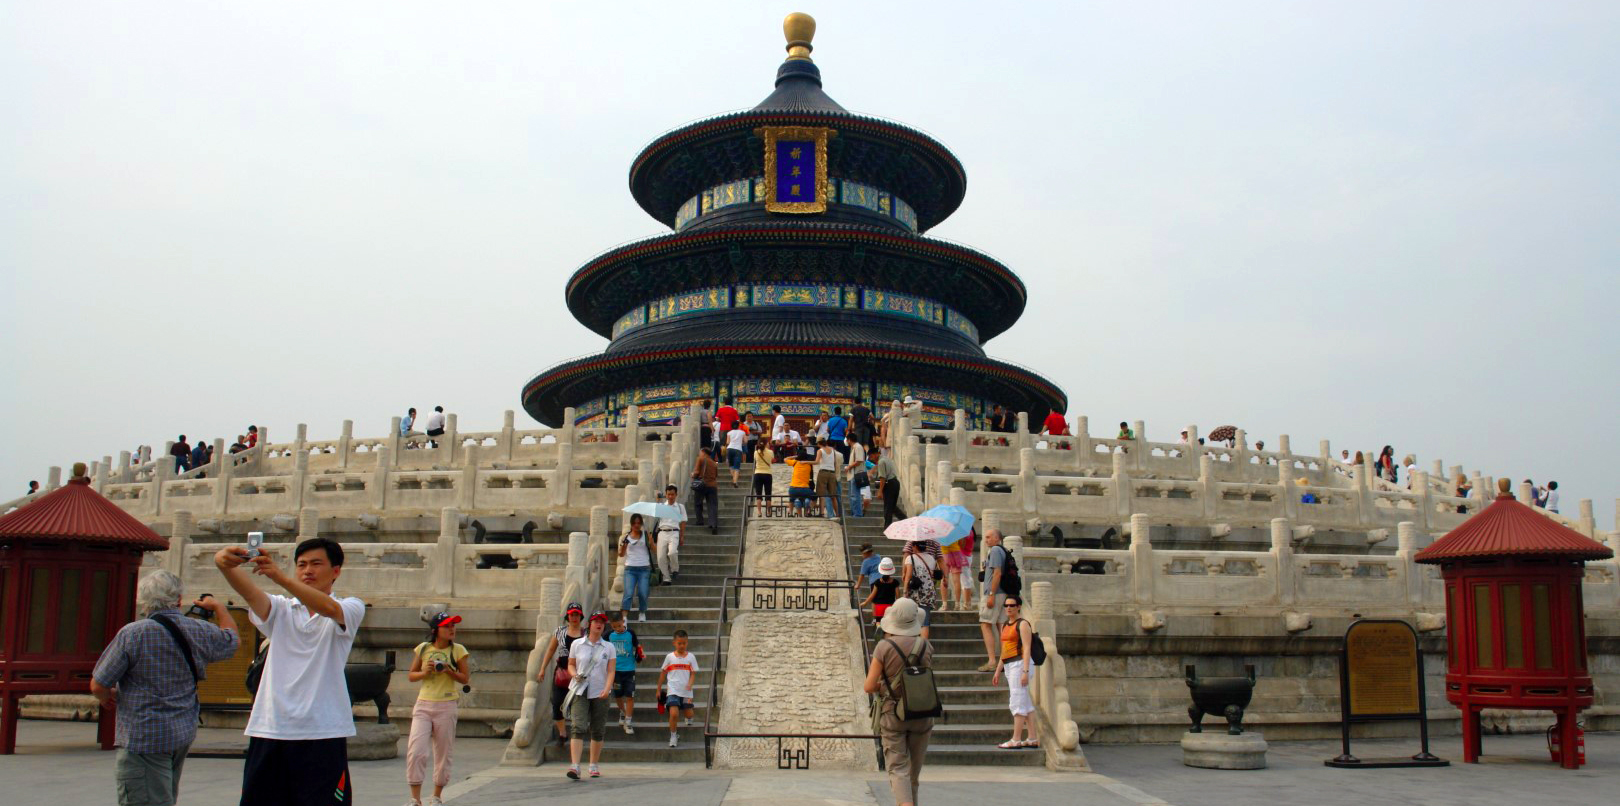 Qué ver en Pekín, China: Templo del Cielo de Pekin / Beijing - China